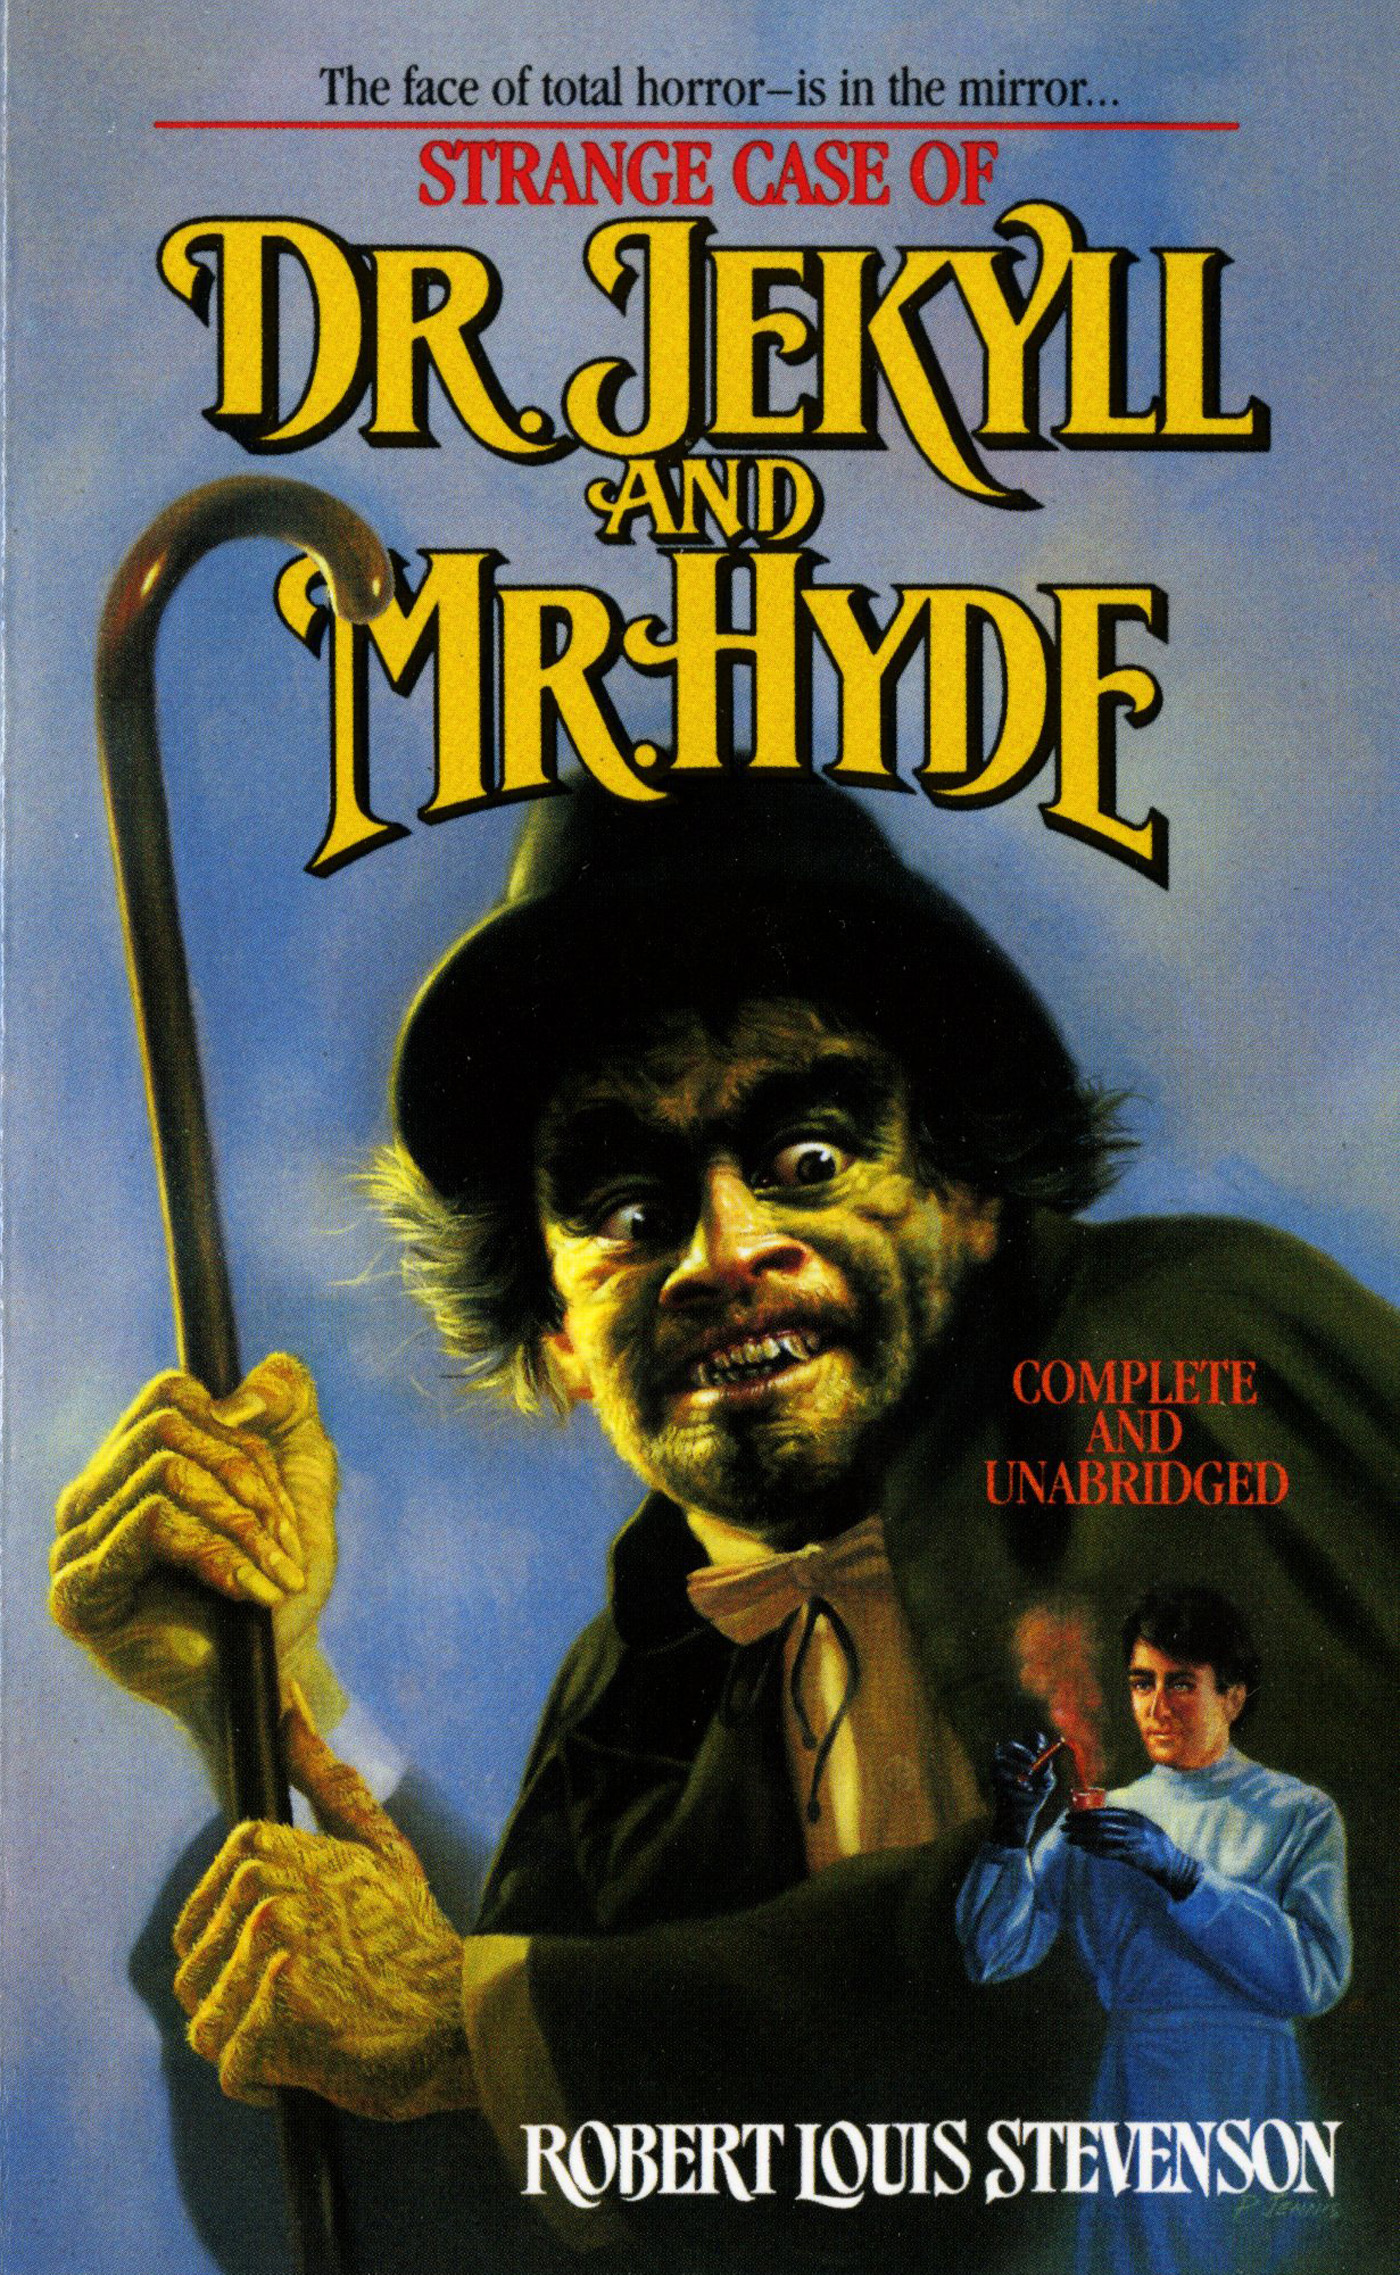 Strange Case of Doctor Jekyll And Mr. Hyde by Robert Louis Stevenson